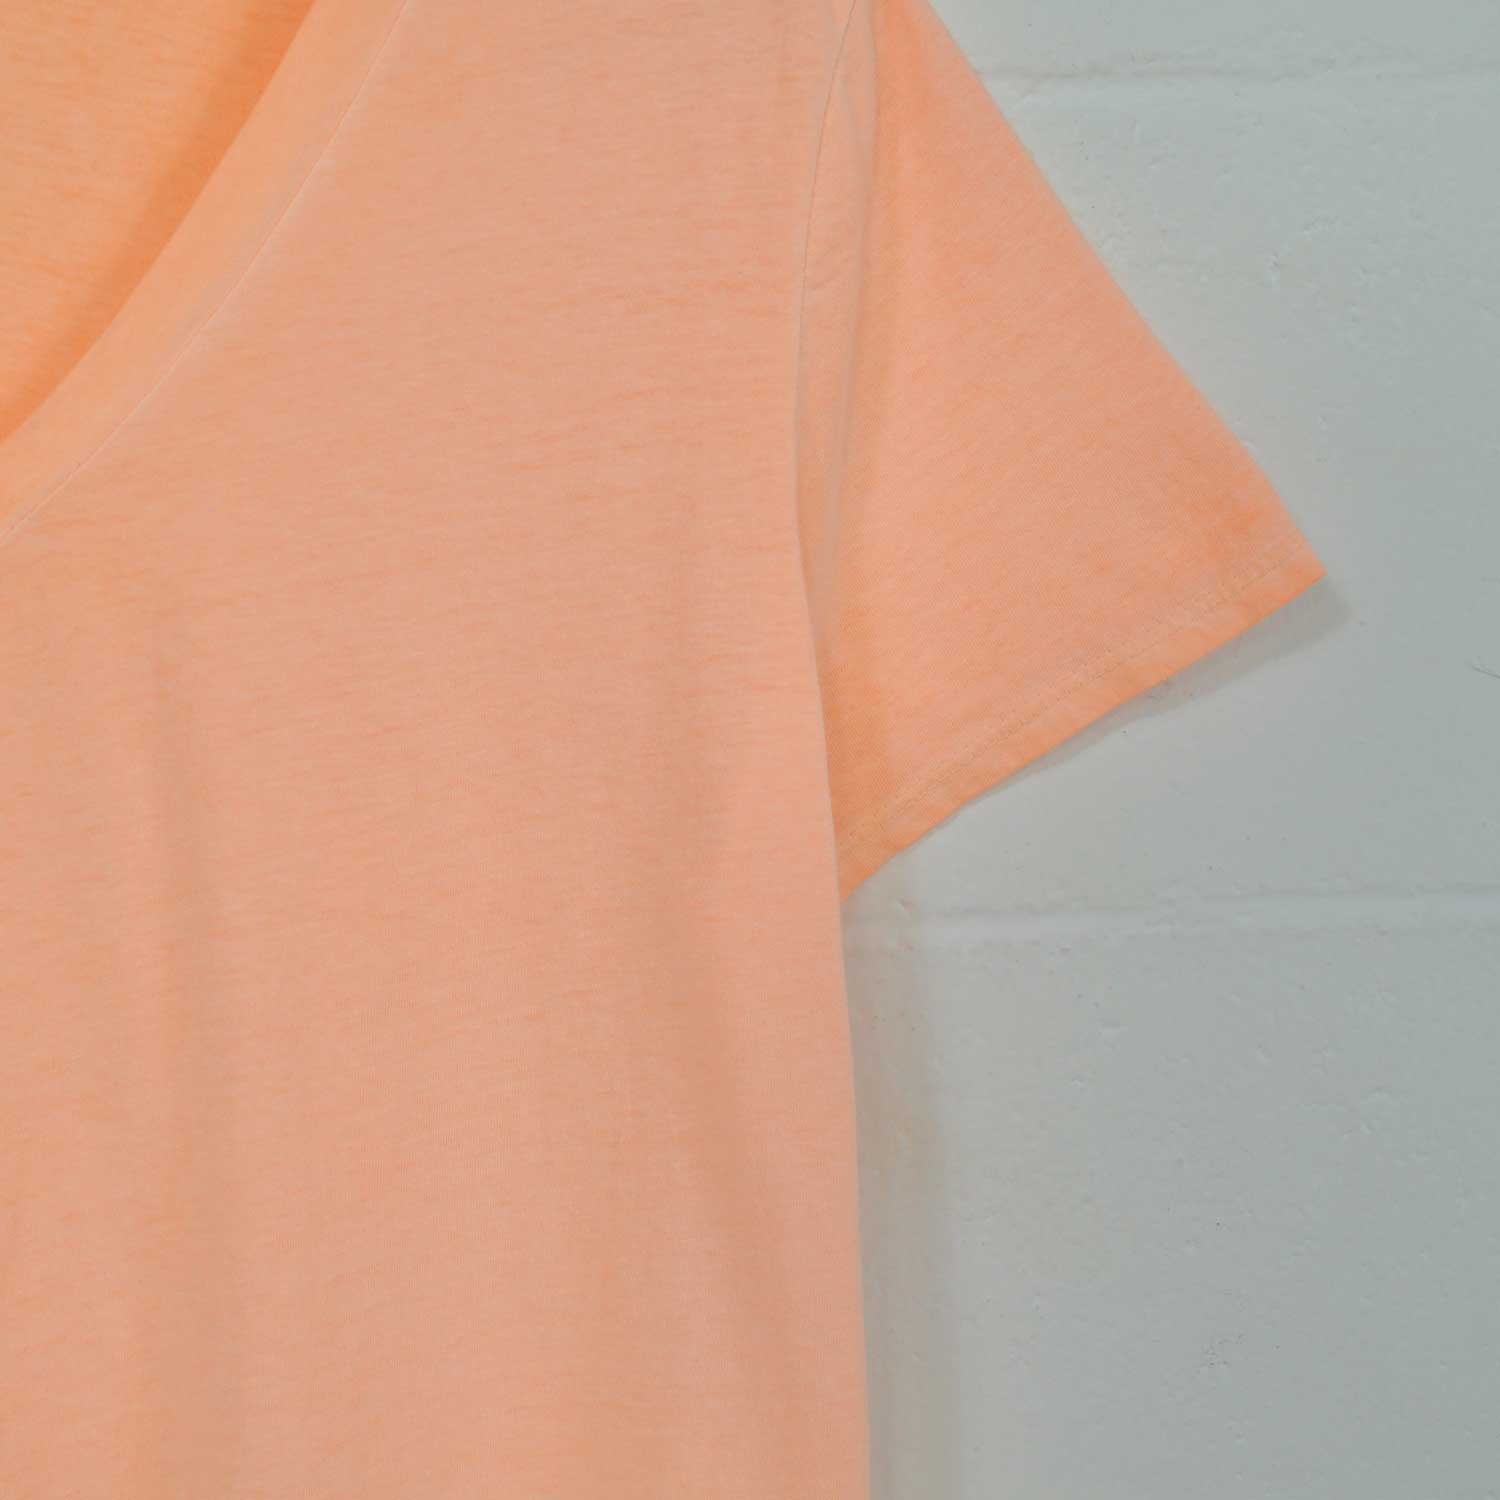 T-shirt orange fluor basique